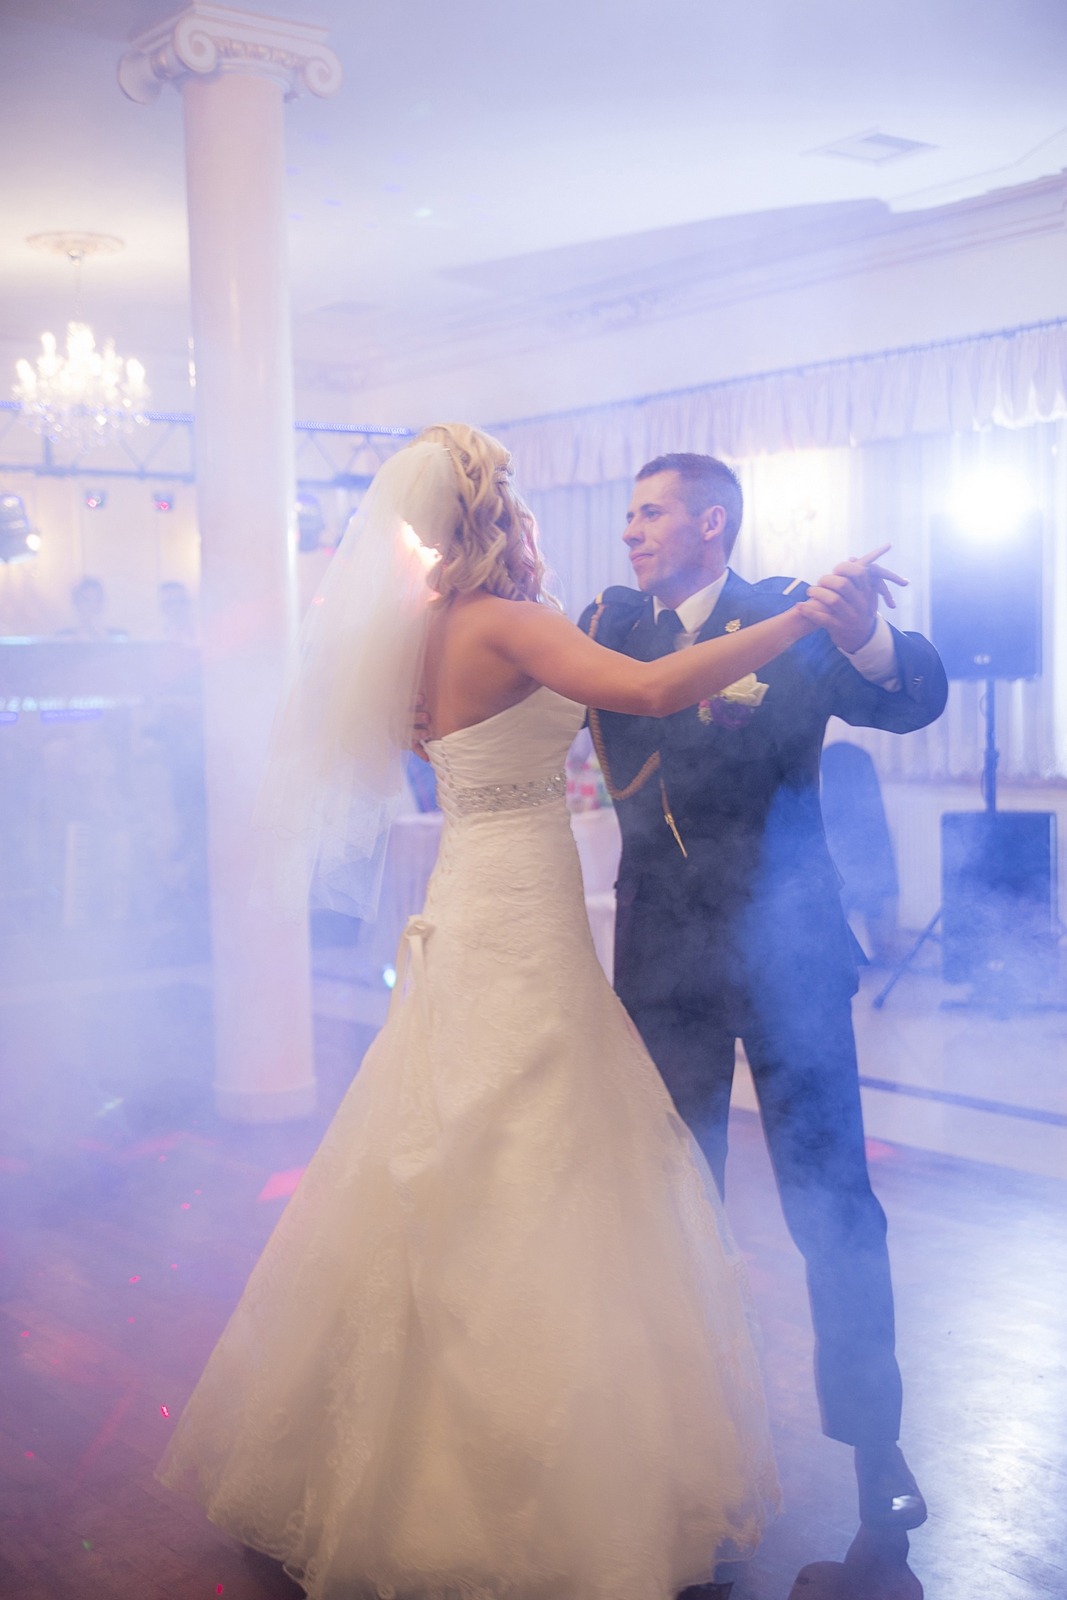 Profesjonalne studio fotografii ślubnej wykonuje reportaż z przyjęcia weselnego  po ceremonii zaślubin w warszawskim kościele